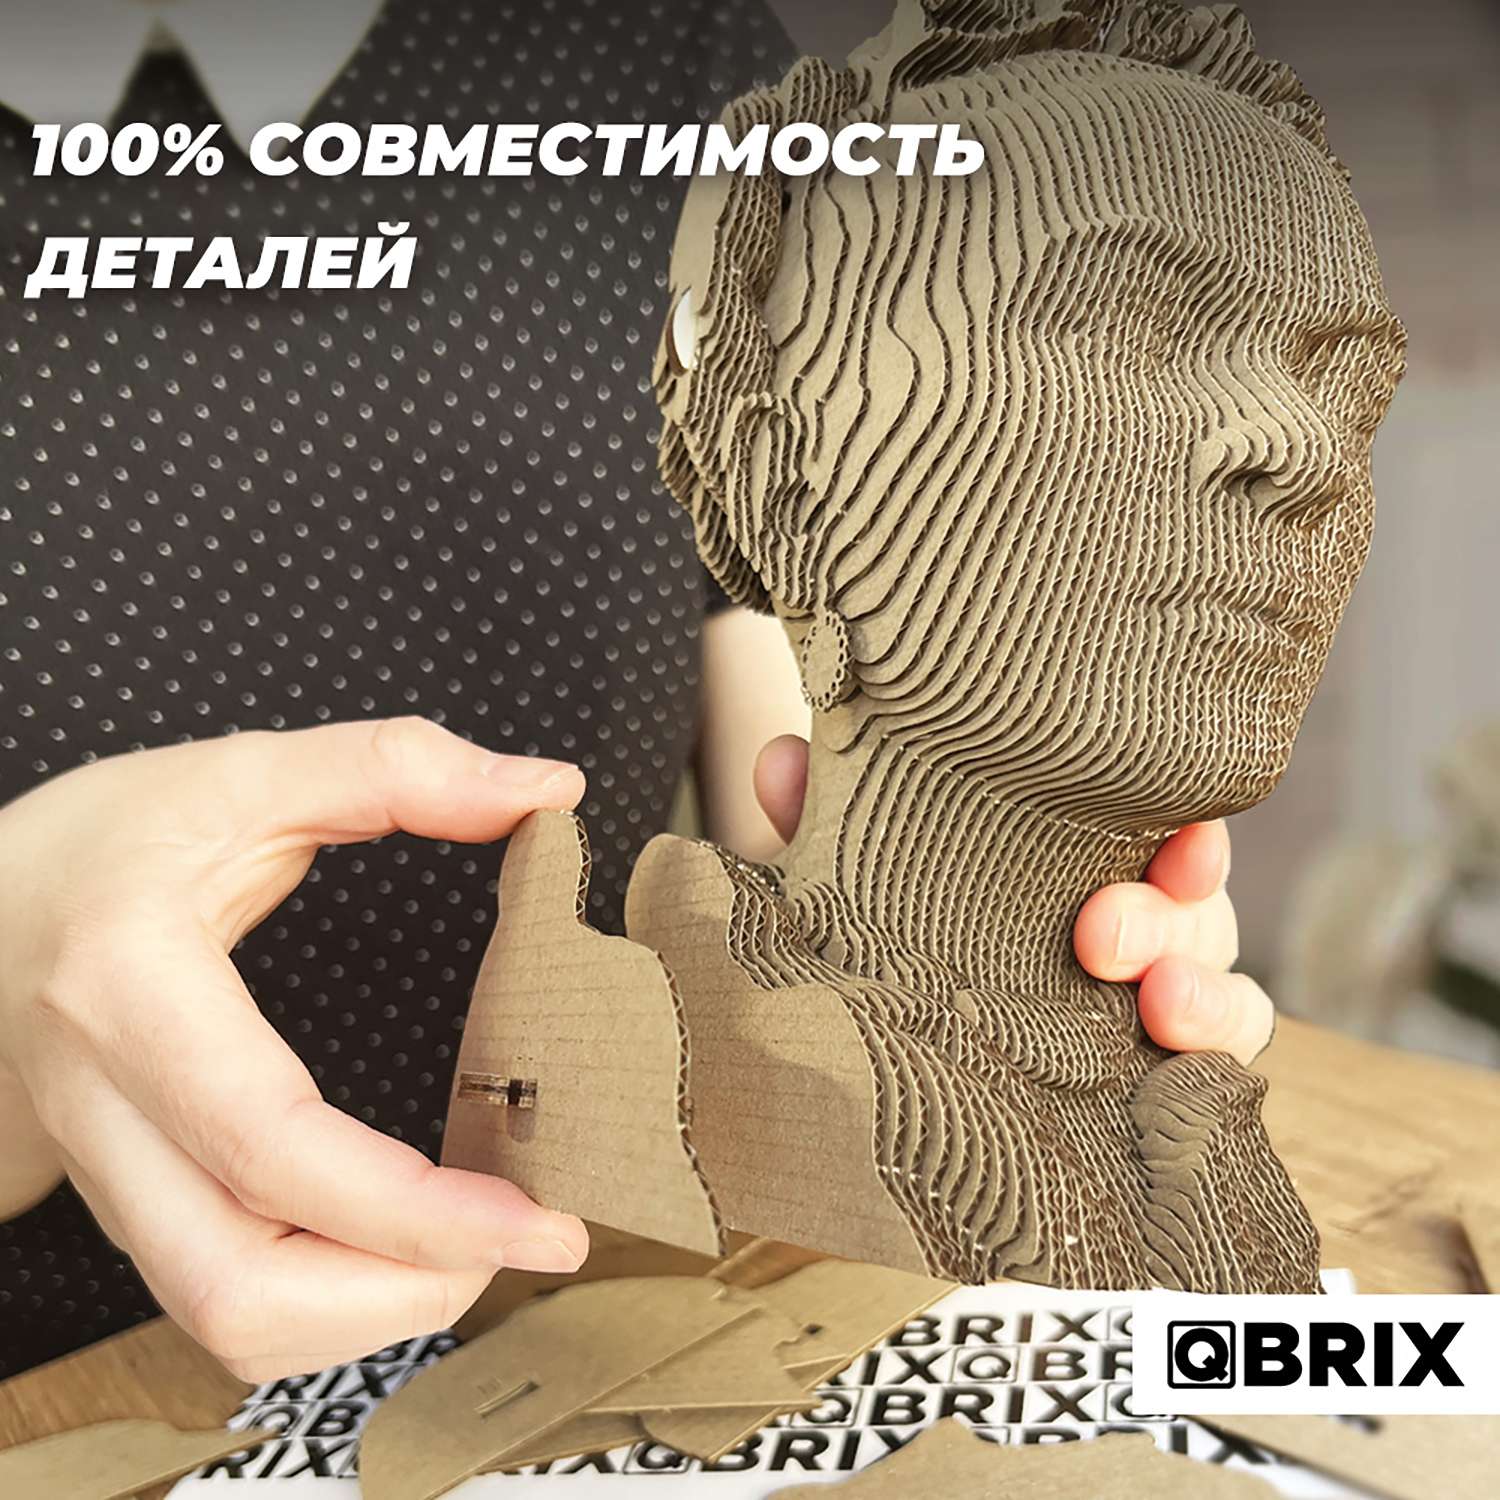 Конструктор QBRIX 3D картонный Фрида Кало 20026 20026 - фото 6